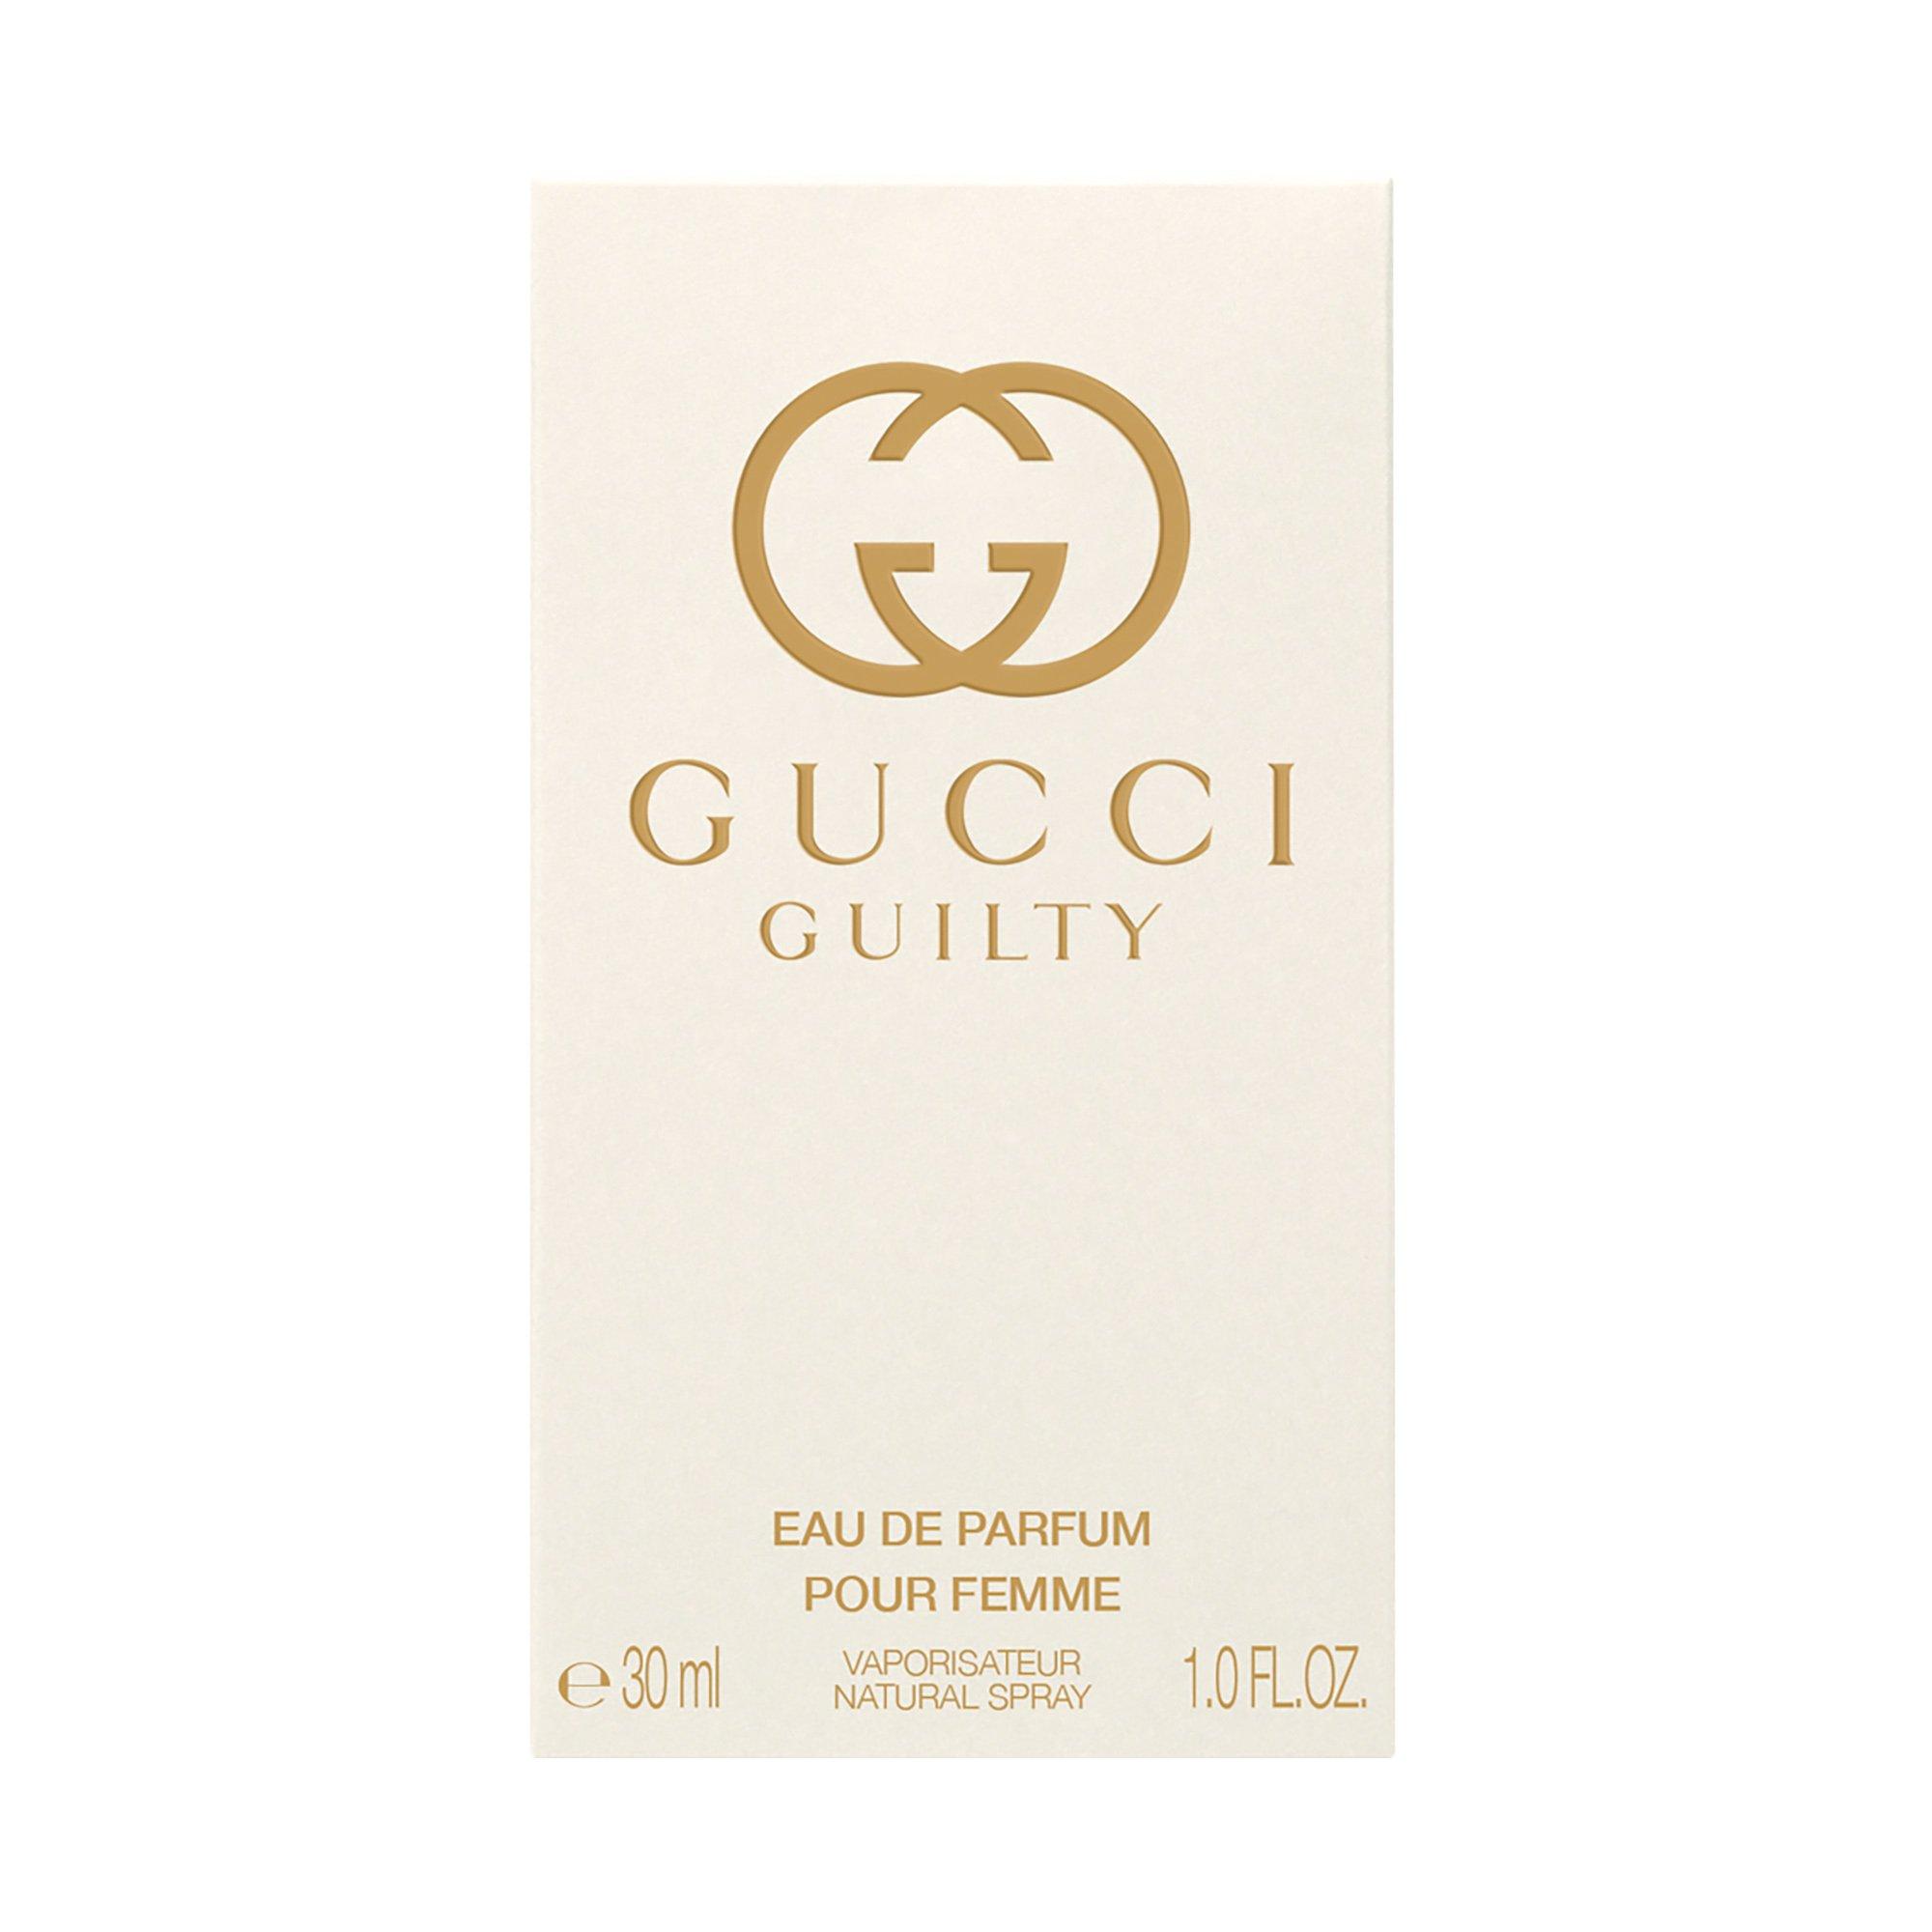 GUCCI Guilty Guilty, Eau de Parfum For Her 